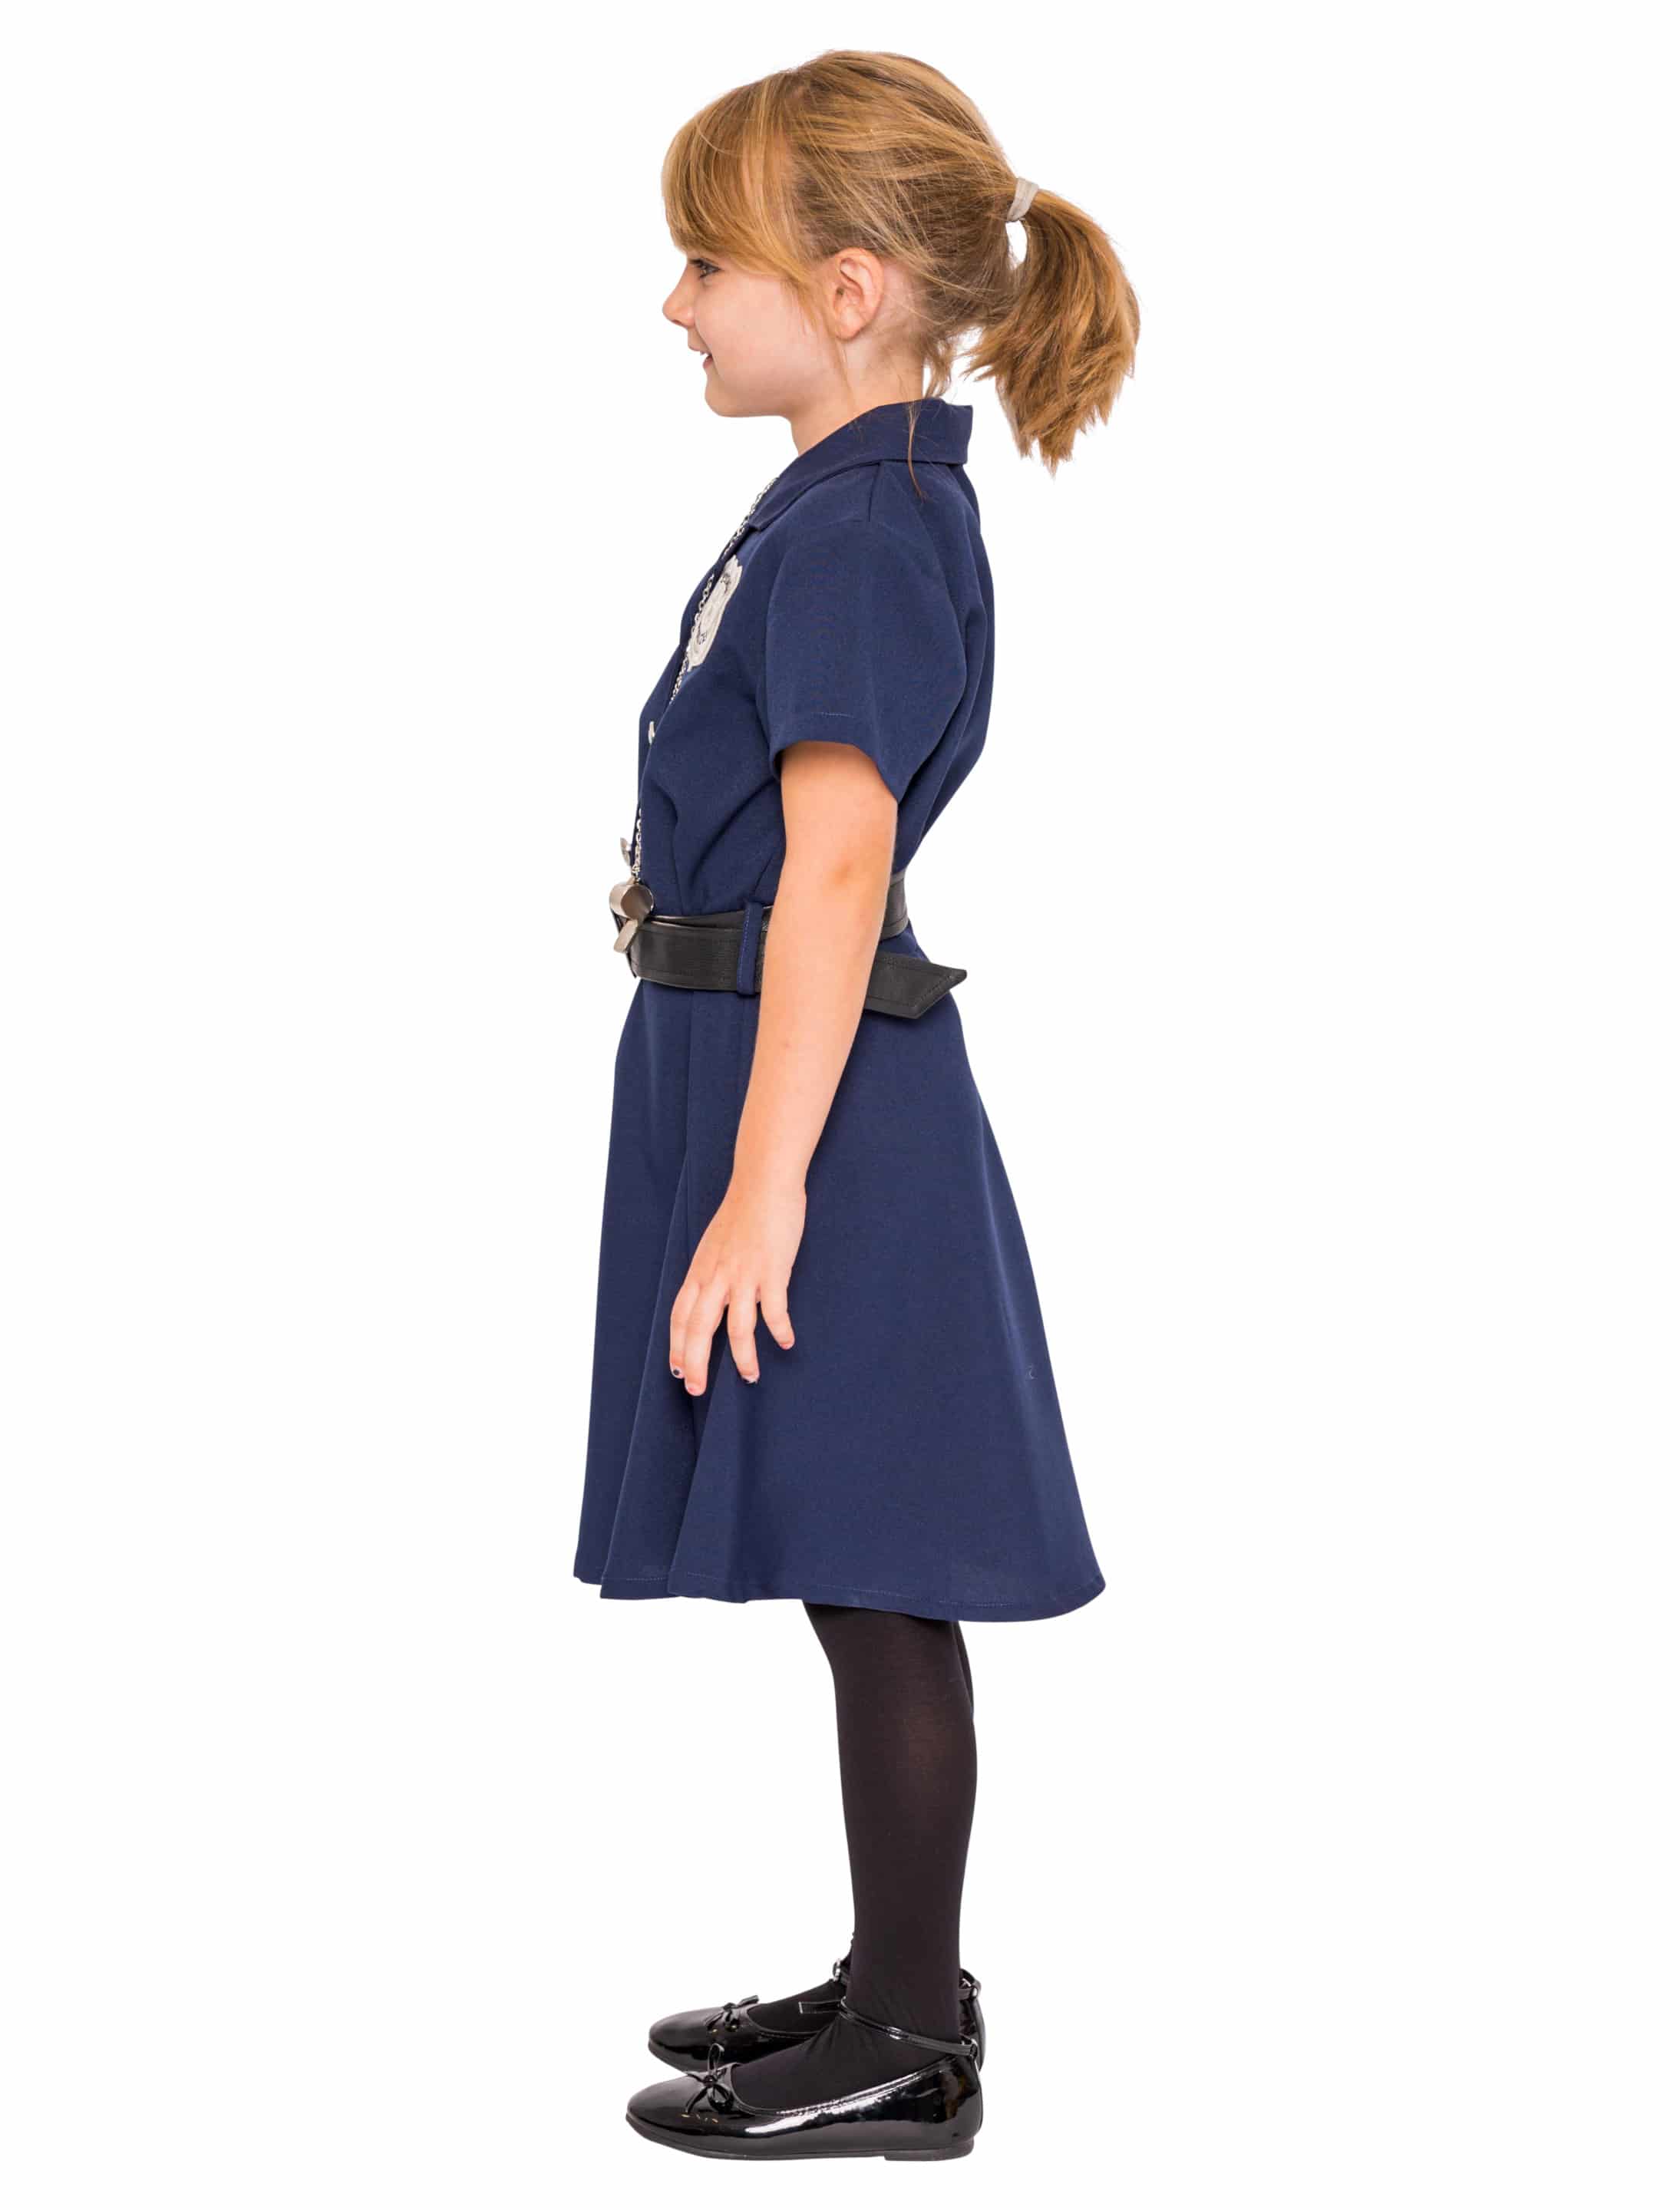 Kleid Police Kinder 2-tlg. blau 140